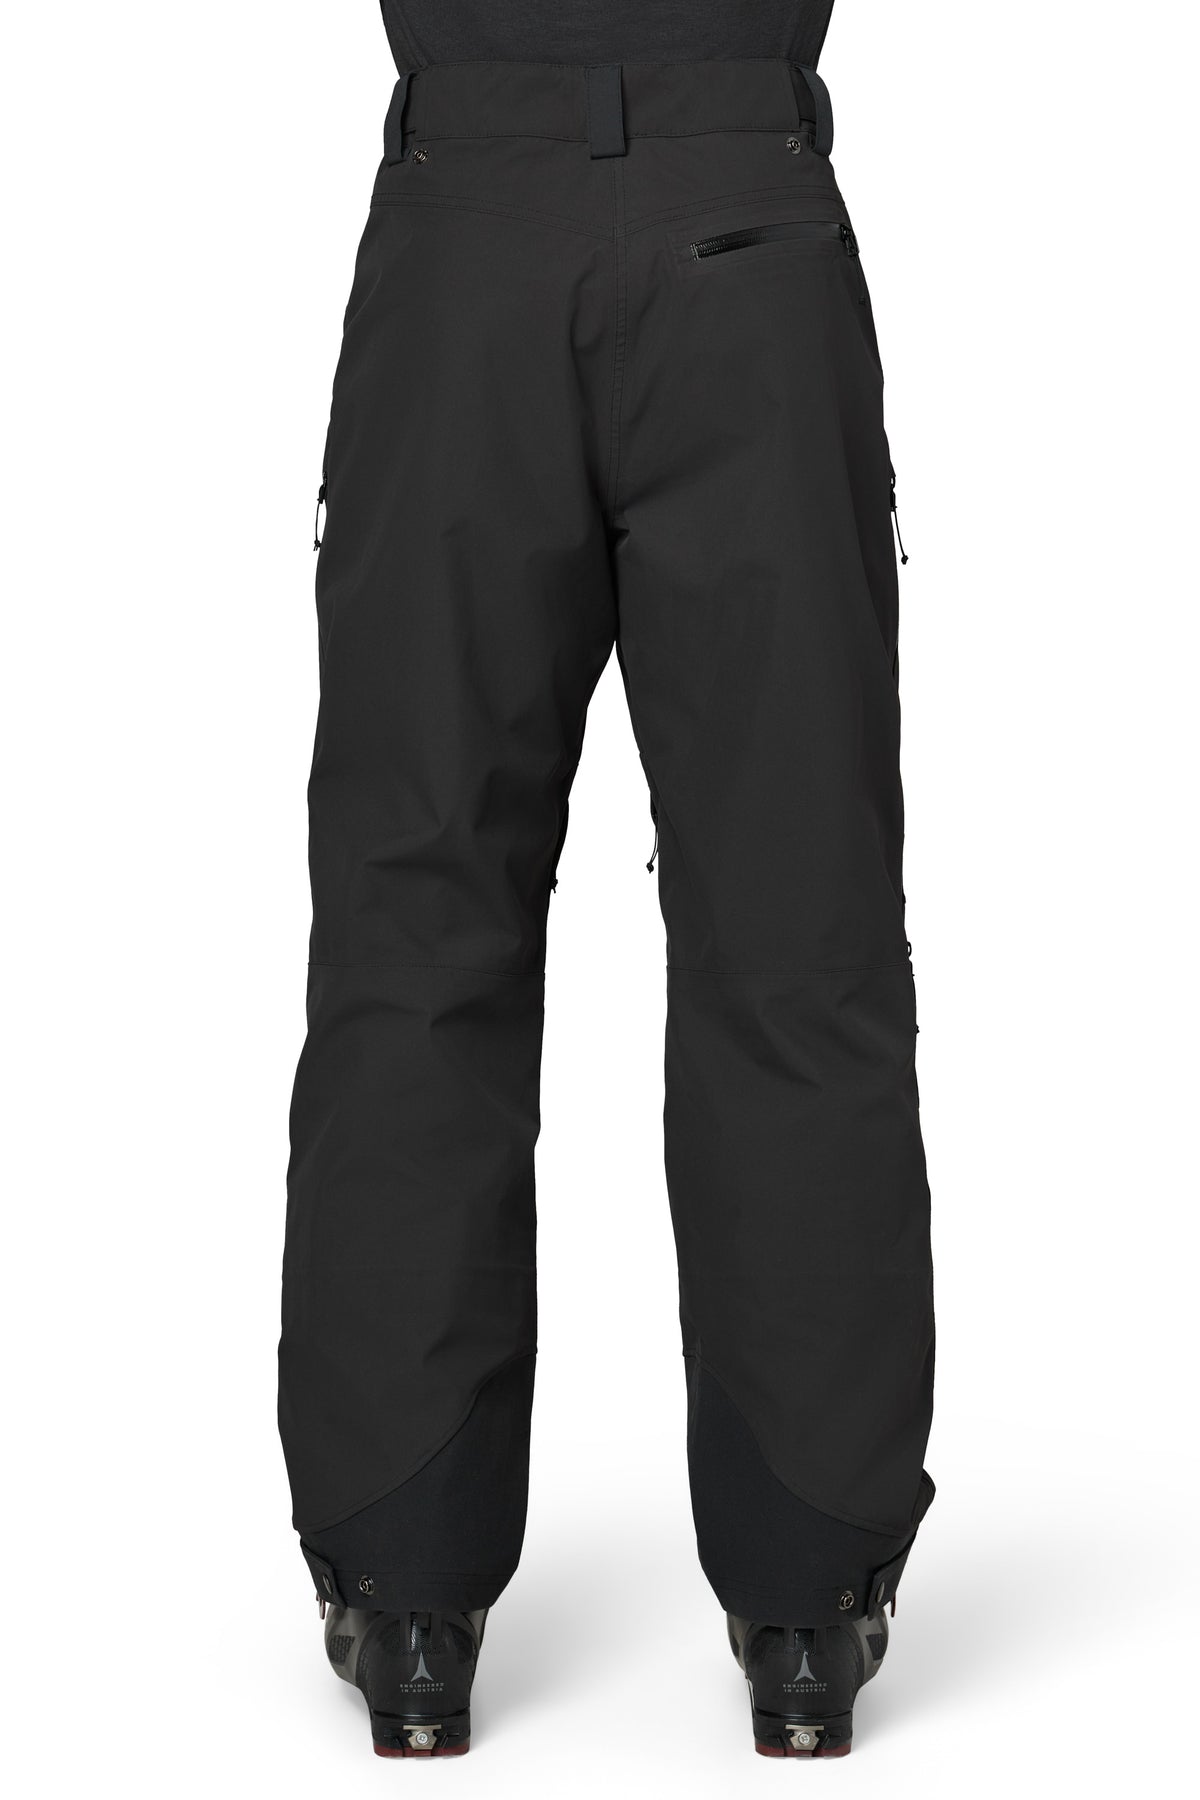 Chemical Pant - Men's Shell Ski Pants | Flylow – Flylow Gear